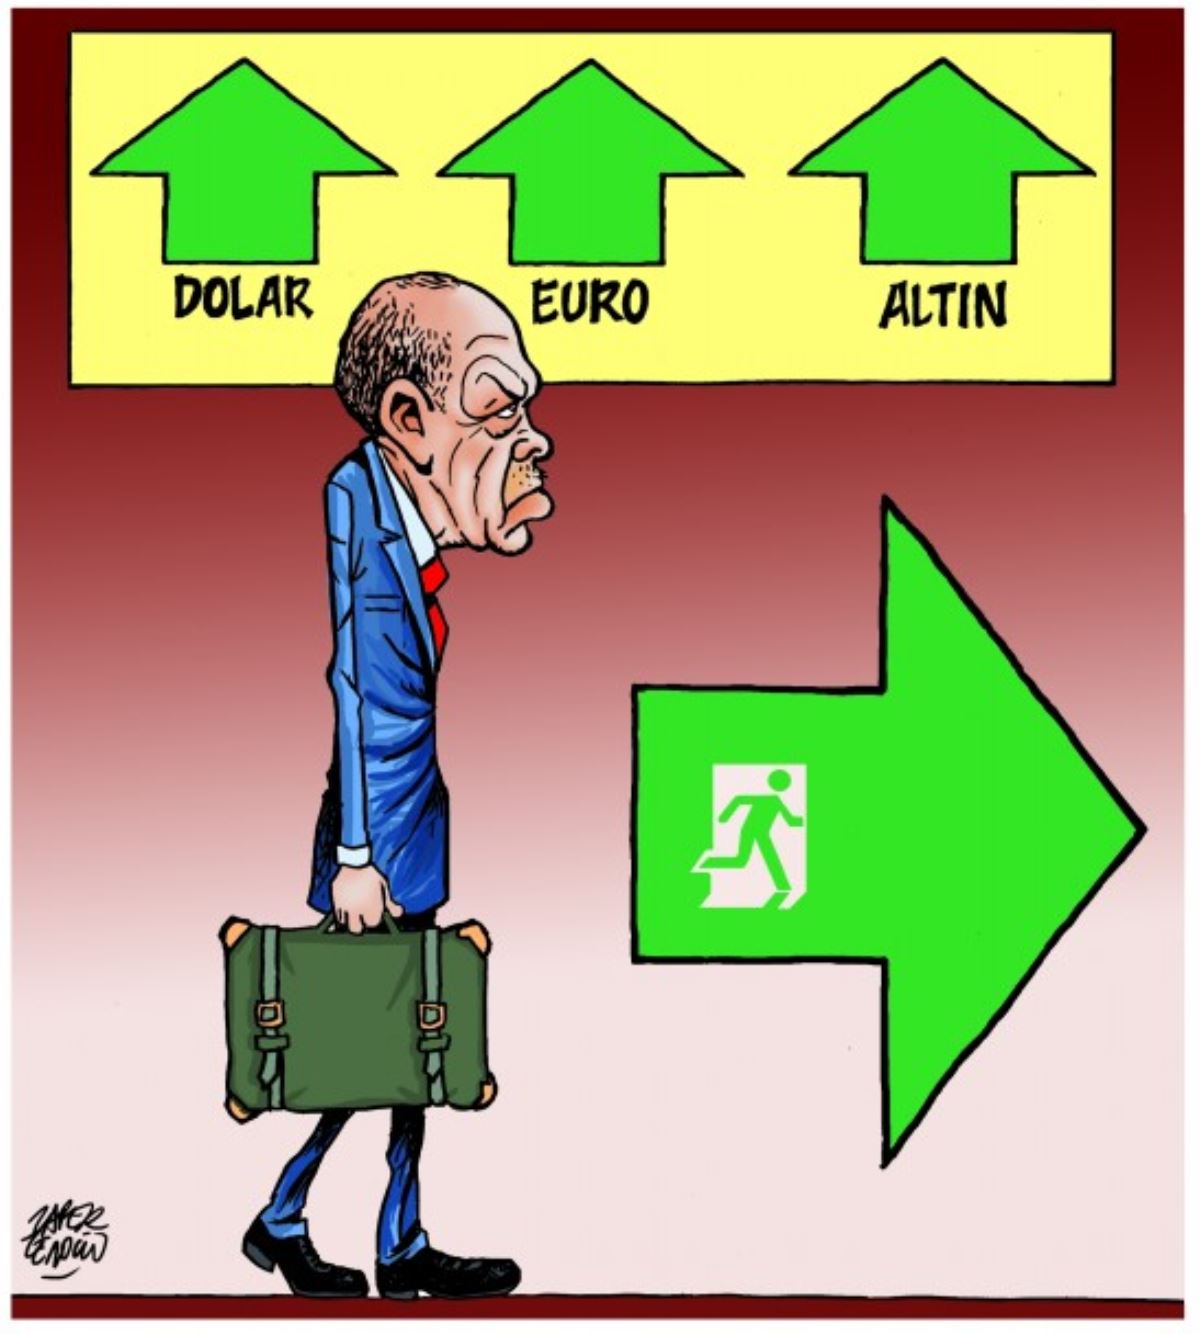 Թուրքիայի տնտեսական ծանր վիճակի մասին ծաղրանկար է հրապարակվել